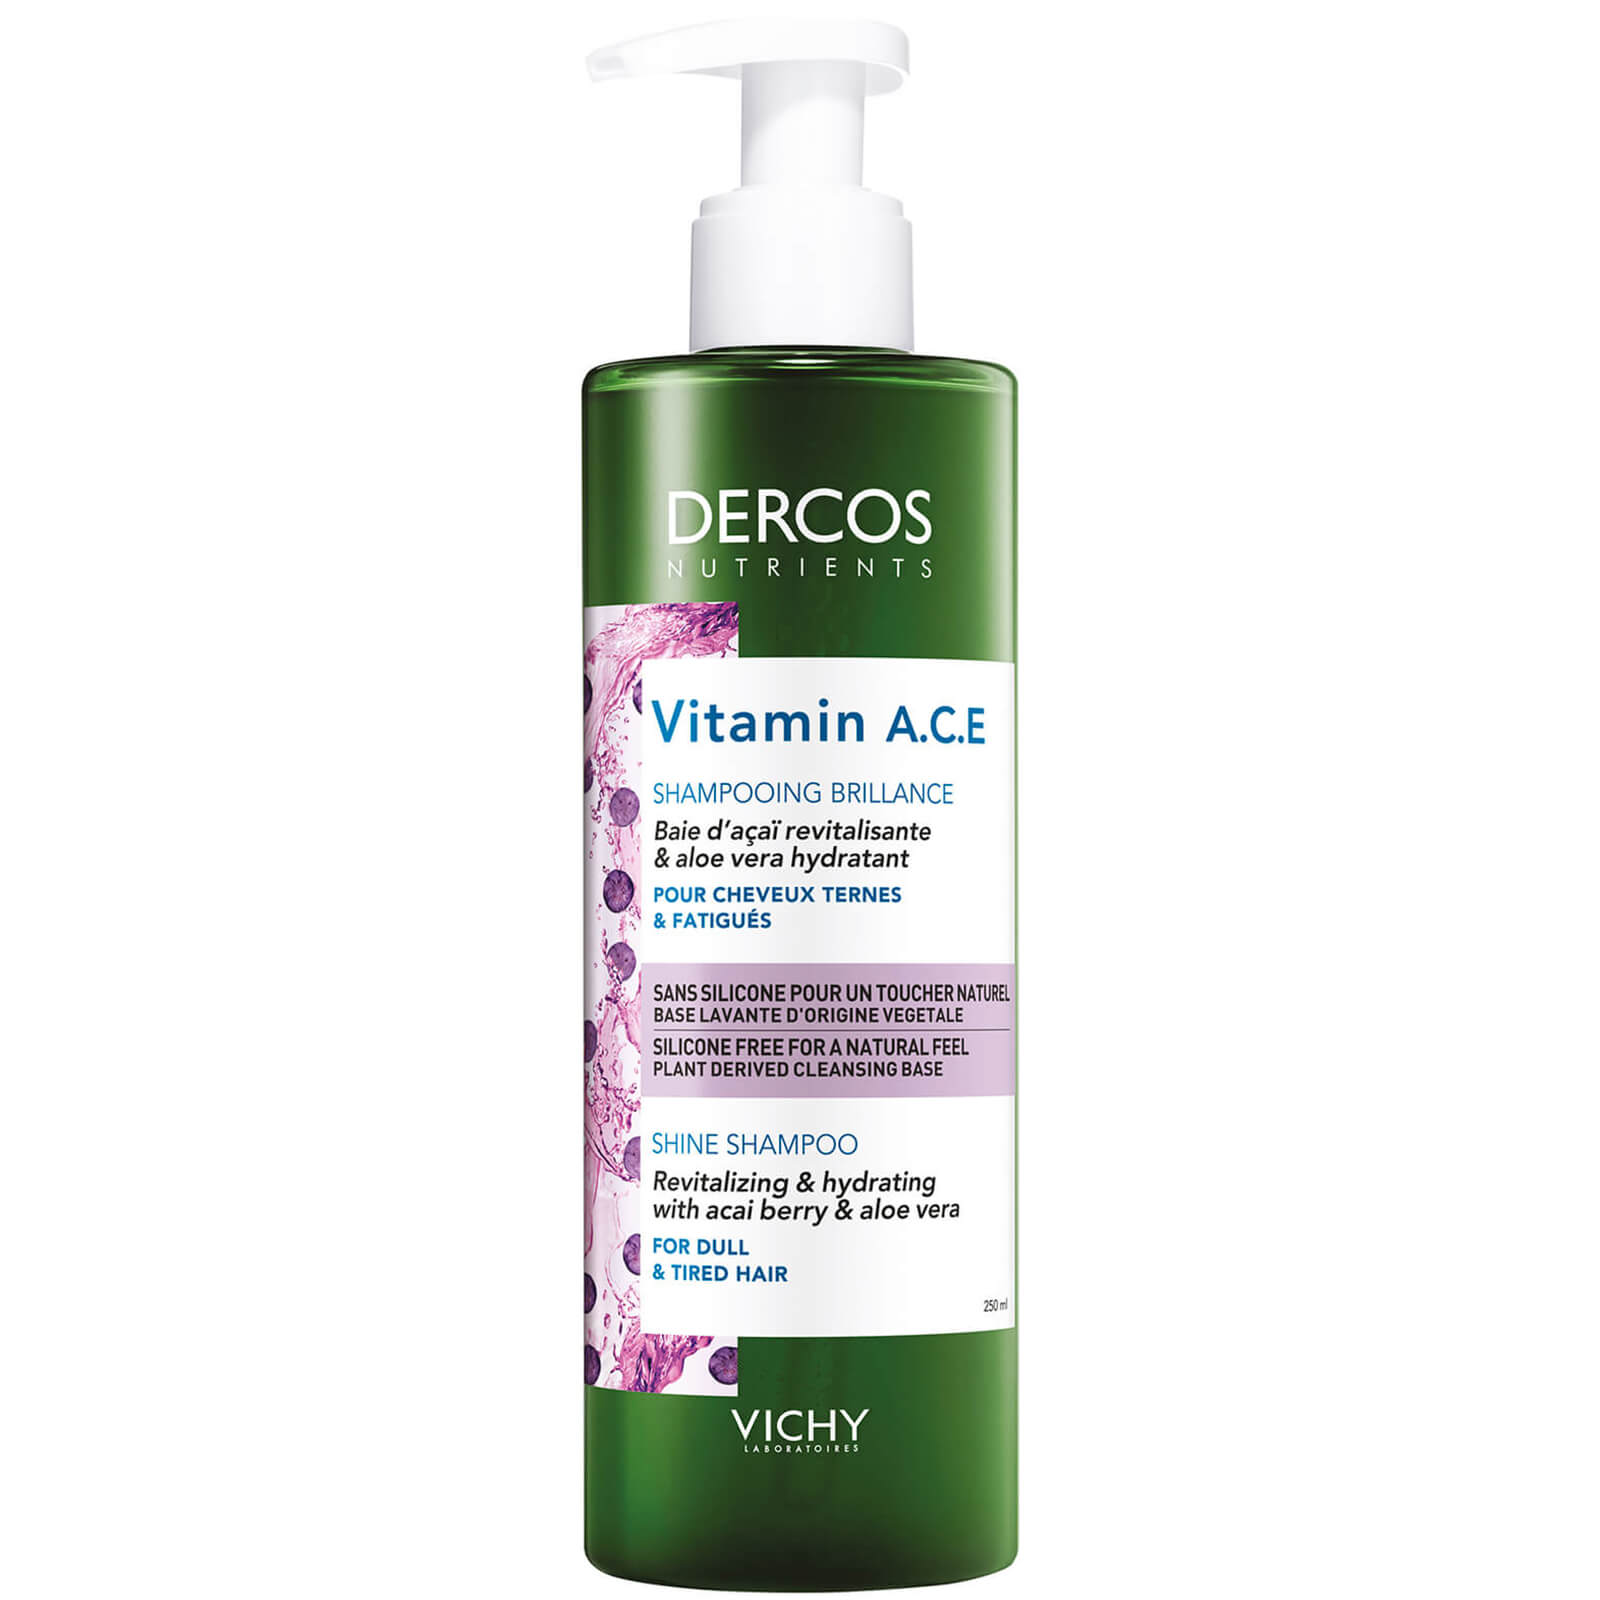 shampooing vitamin a.c.e dercos nutrients vichy 250 ml